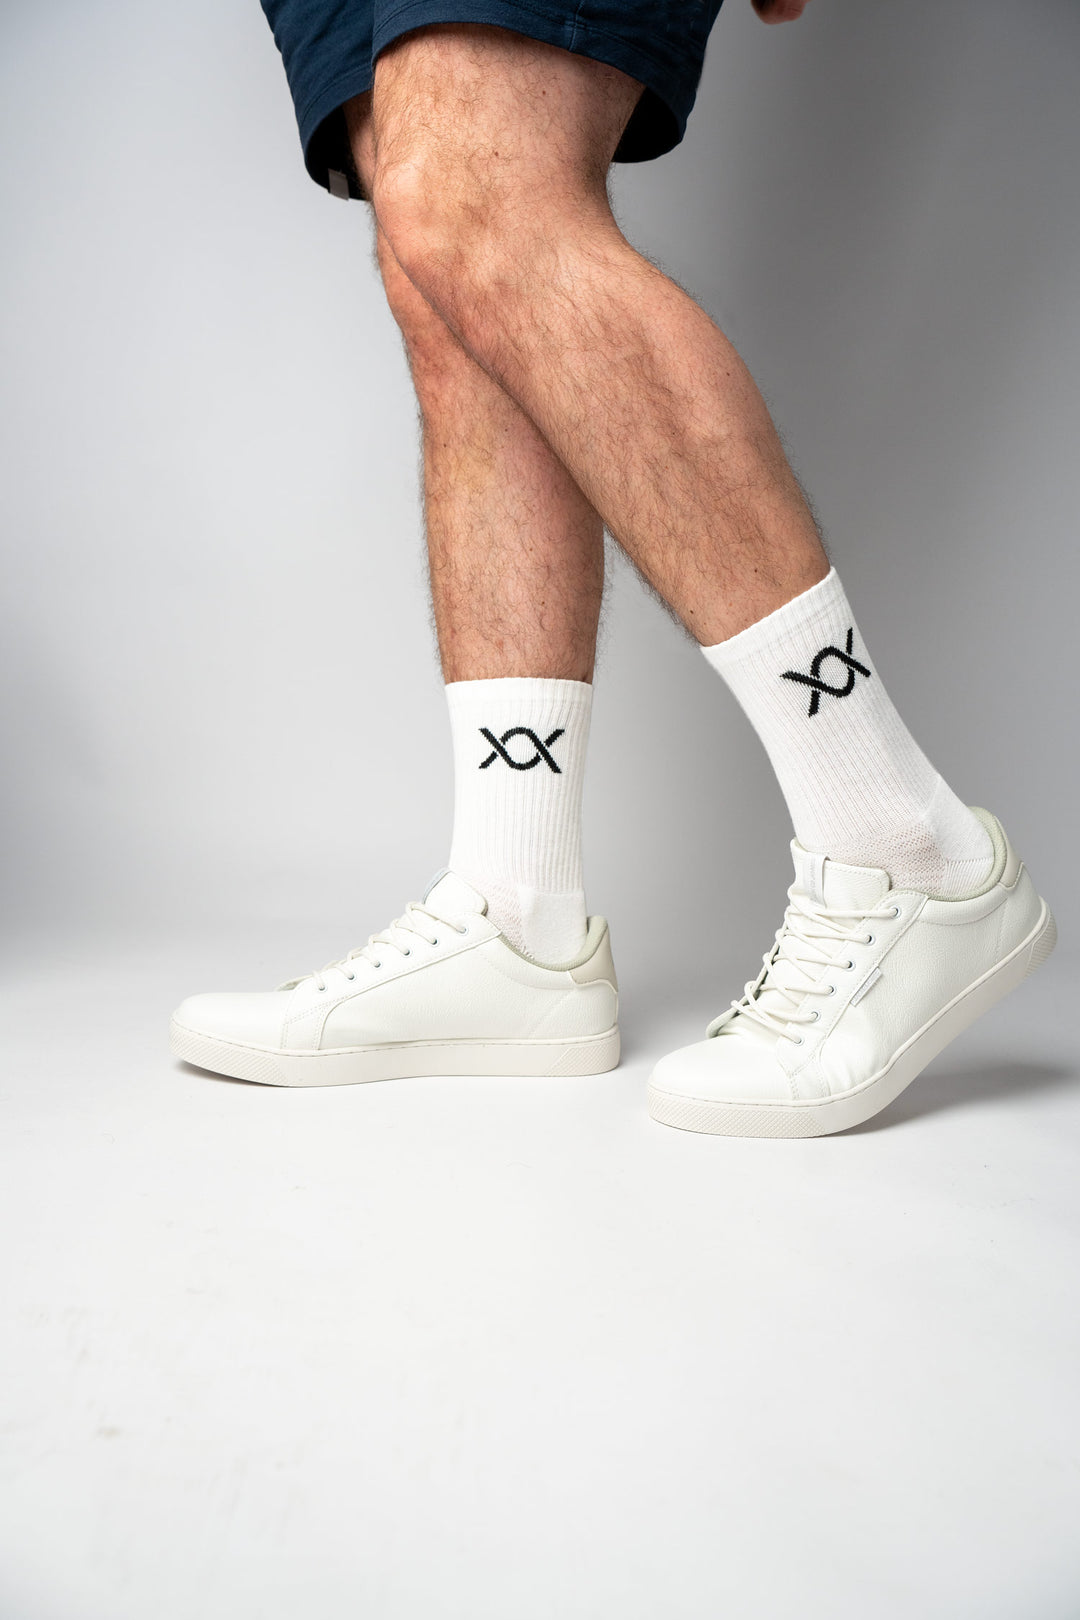 DIXXSON Crew Tennis Socken - weiß - Unisex für Damen und Herren - Bio-Baumwolle